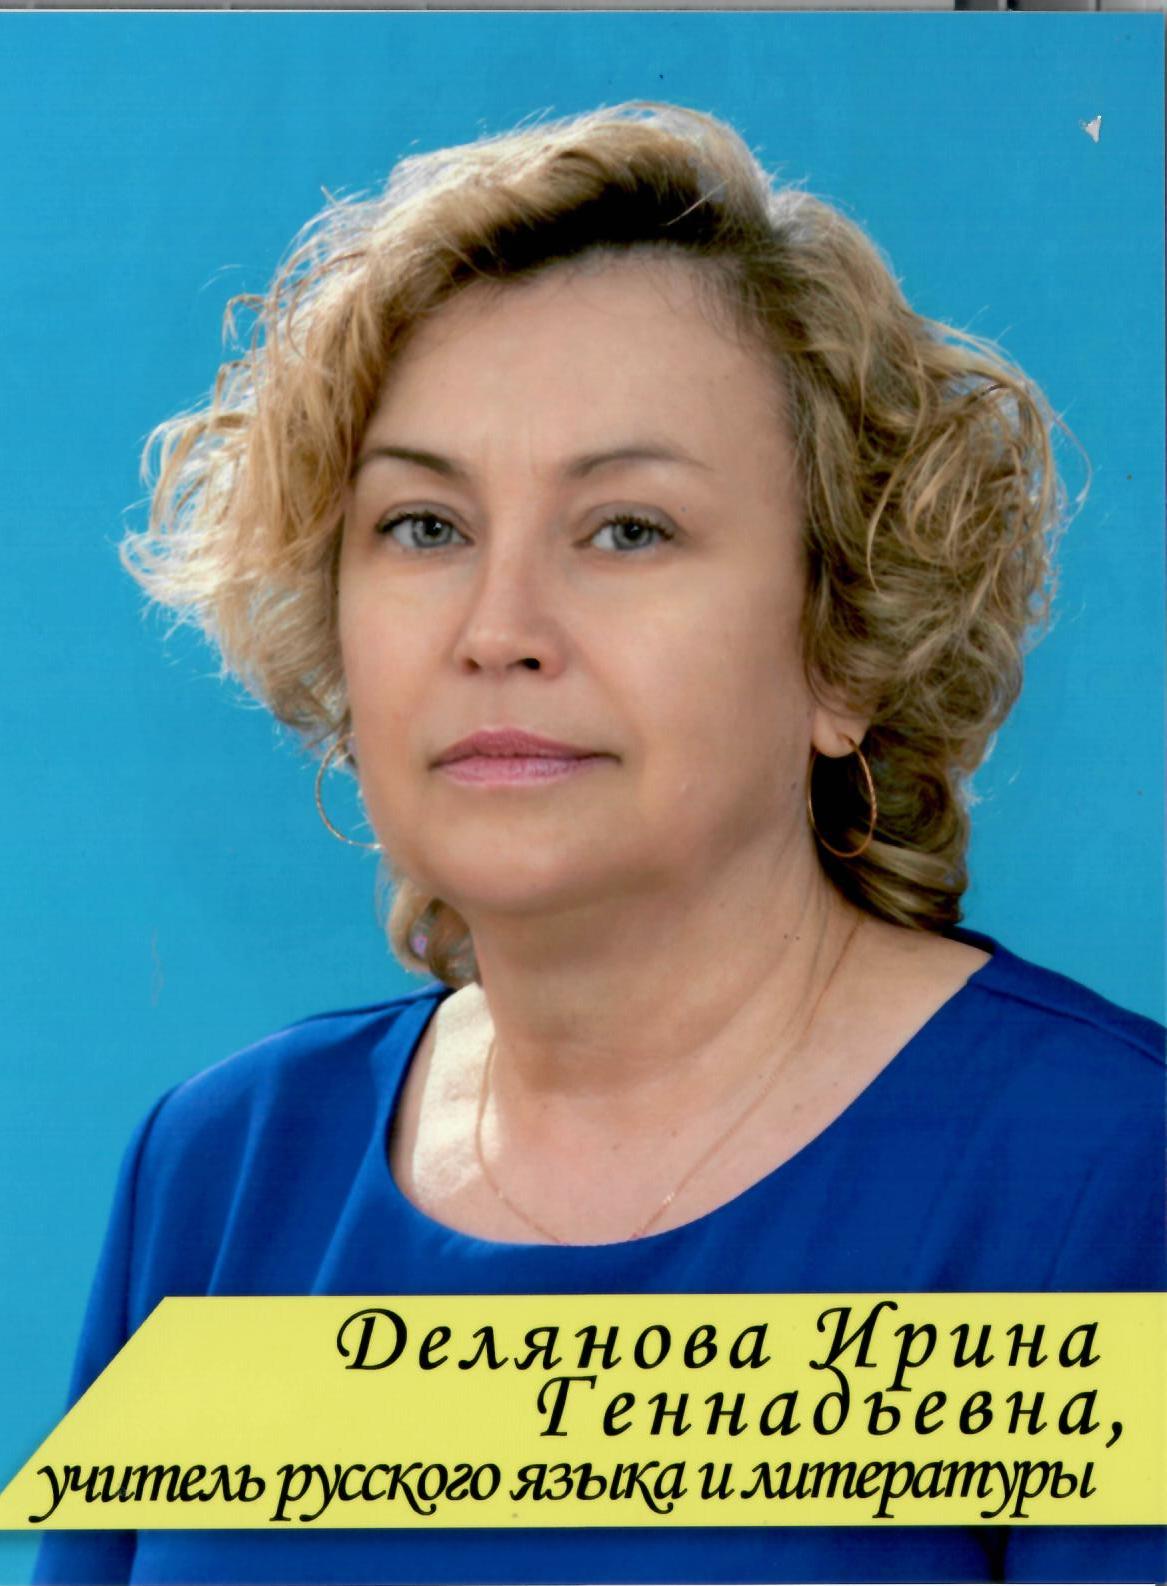 Делянова Ирина Геннадьевна.